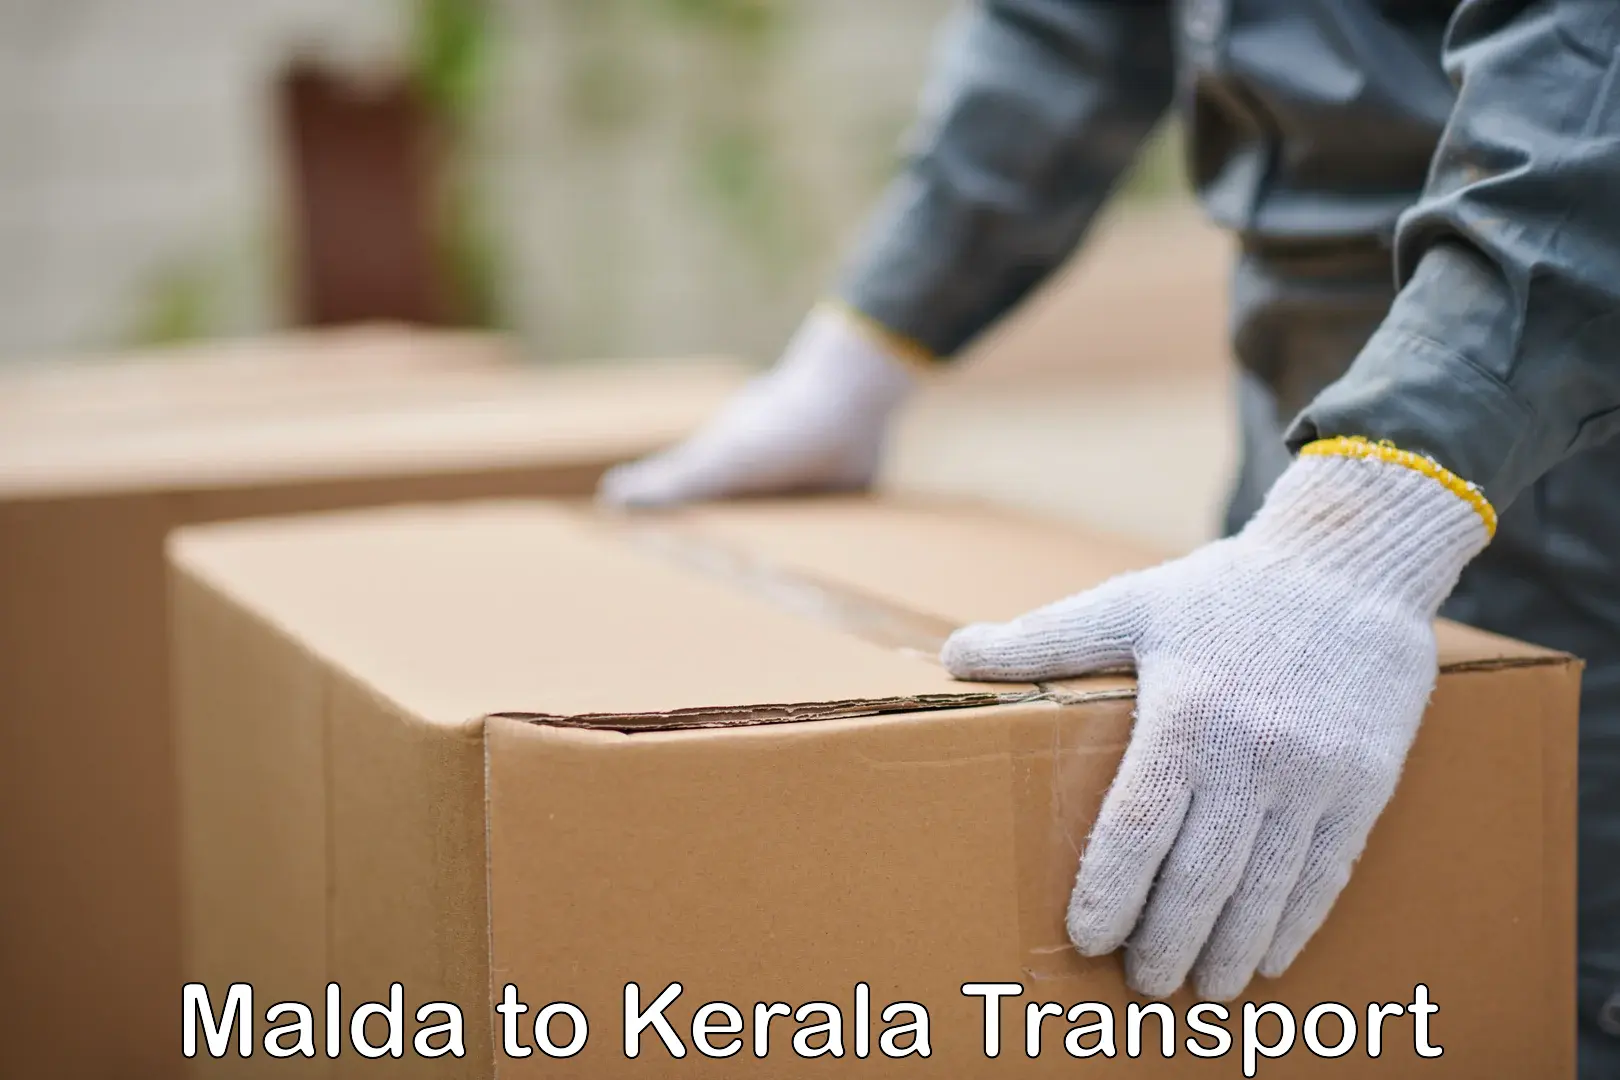 Bike transport service Malda to Kerala